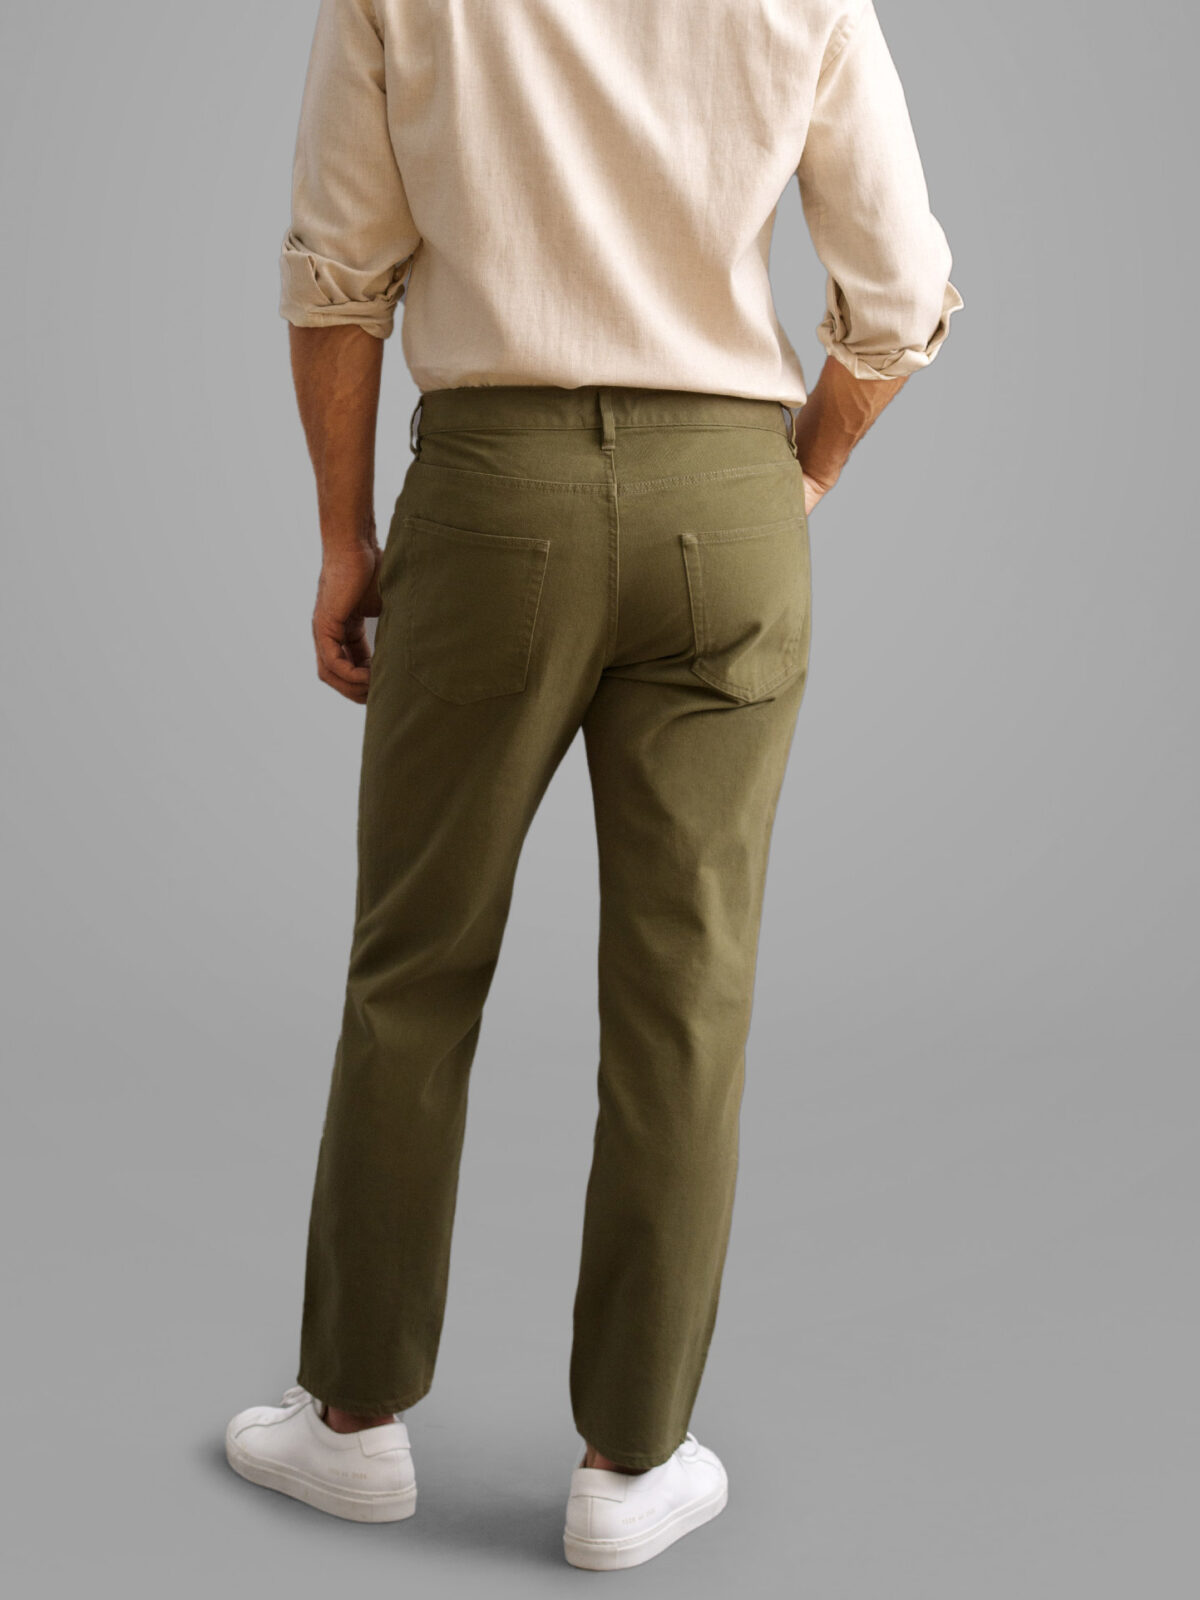 Waverly Pant Set - Olive